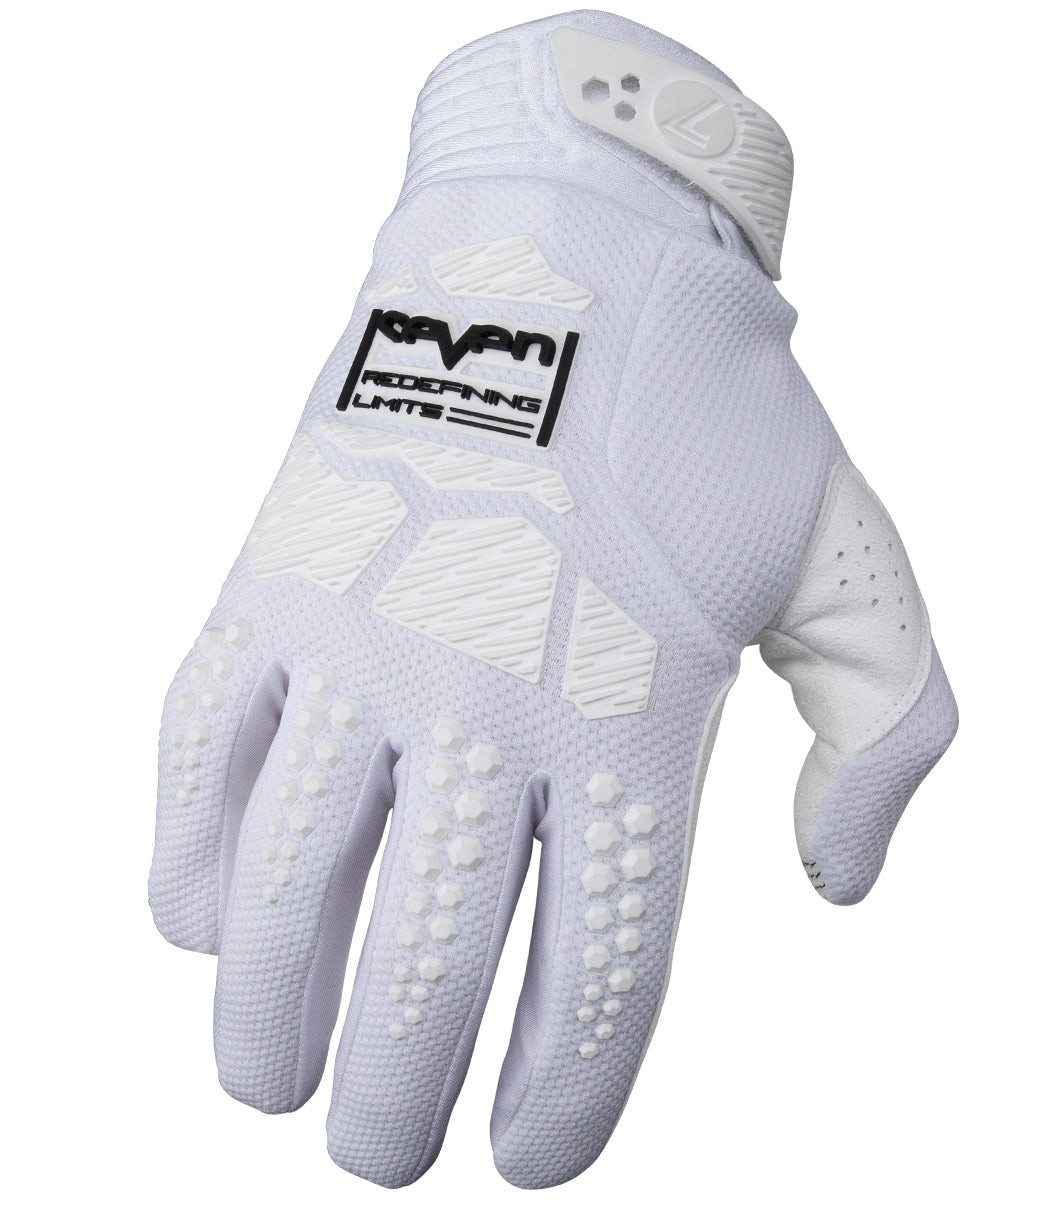 Rival Ascent Glove - White